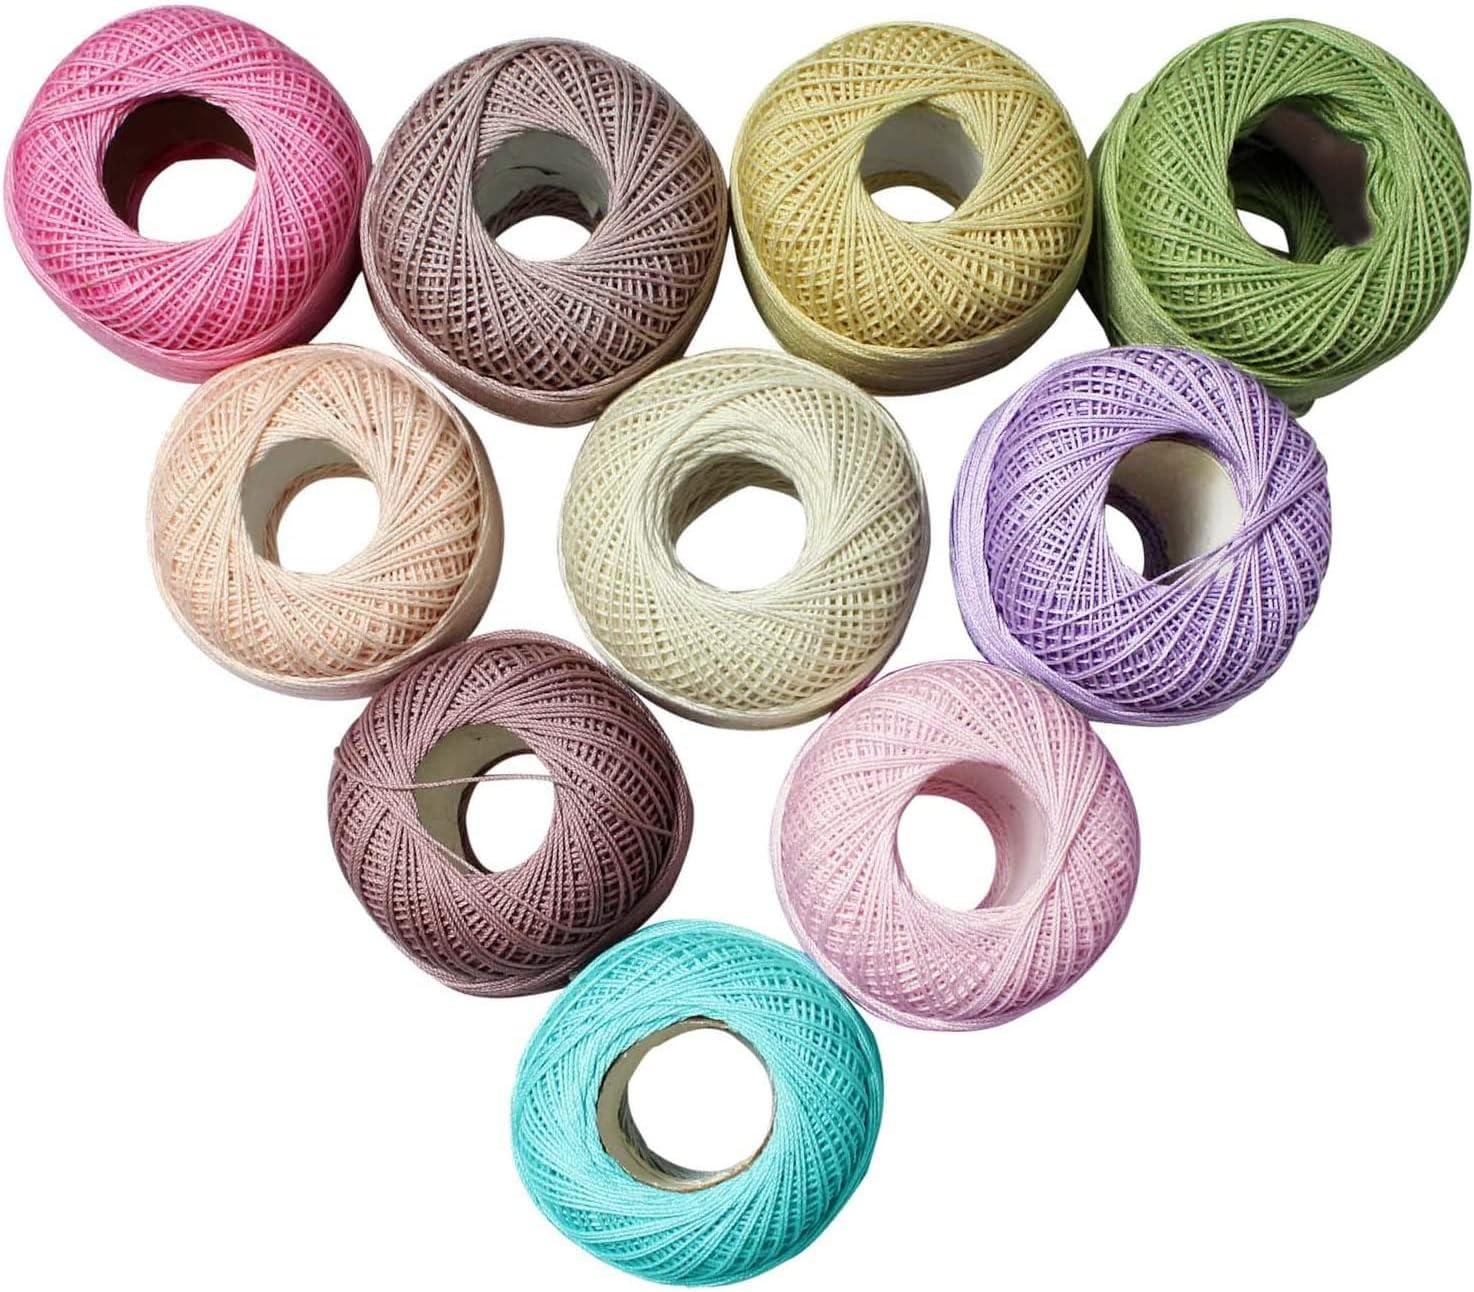 Fdit Lace Thread Colorful Hand Made DIY Knitting Crochet Stitch Thread Lace  Thread,Bulk Yarn,Tatting Thread